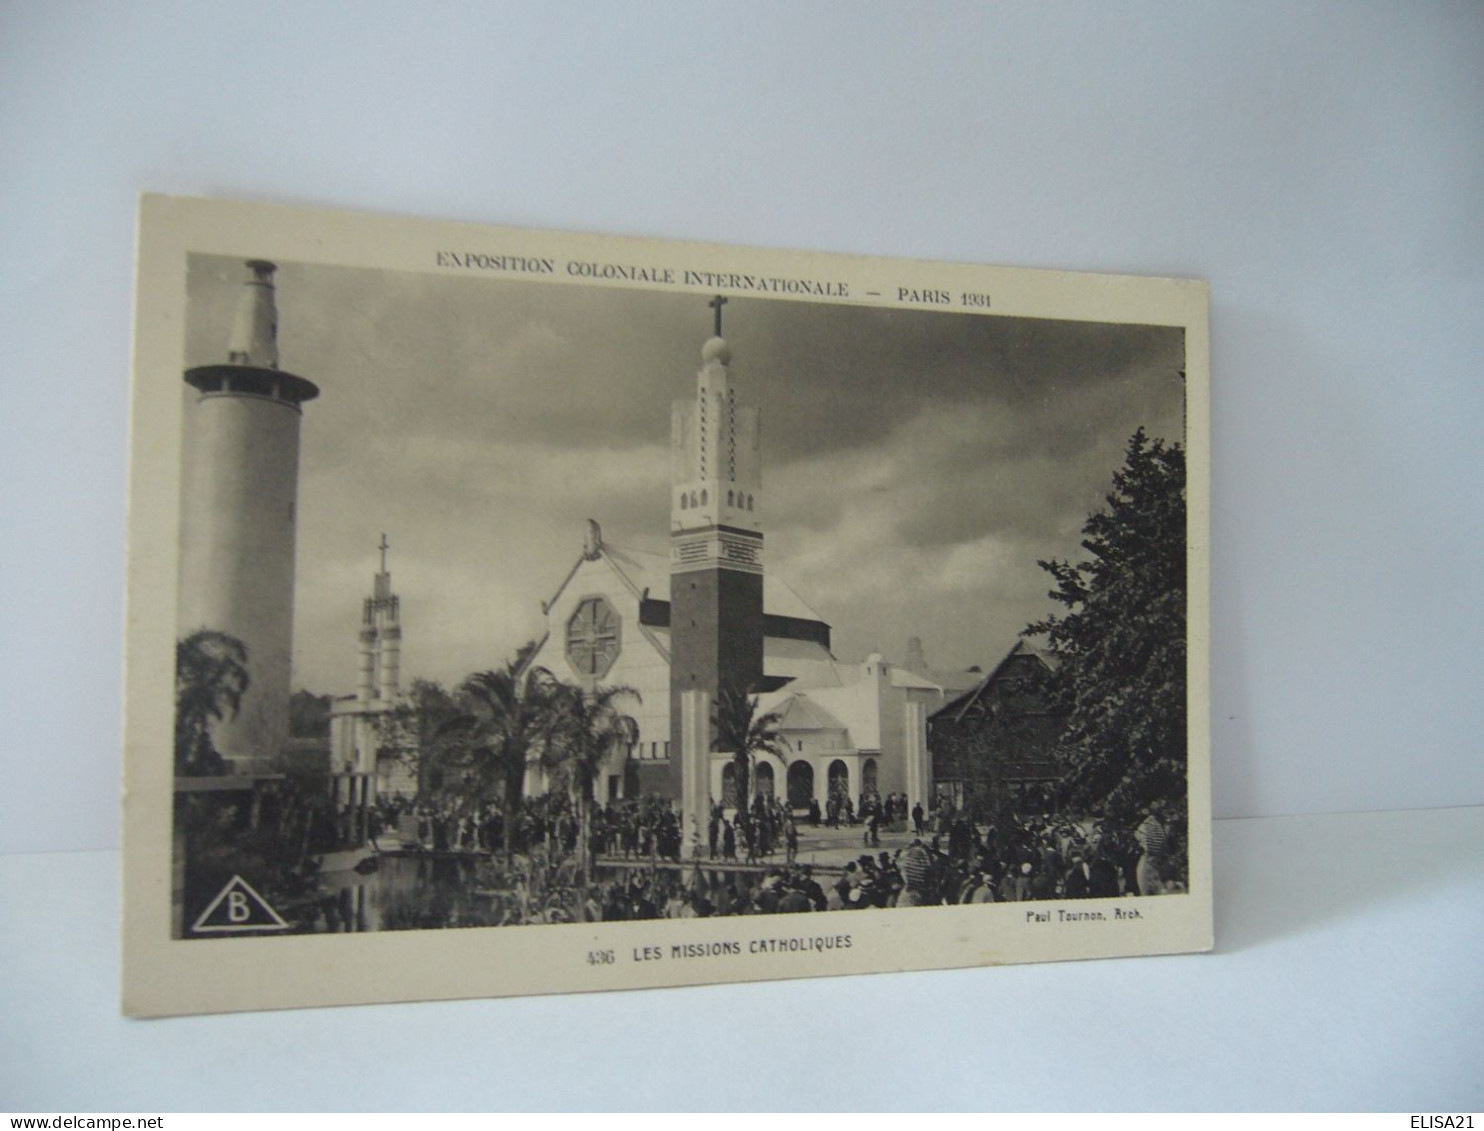 EXPOSITION COLONIALE INTERNATIONALE PARIS 1931 PARIS LES MISSIONS CATHOLIQUES CPA - Ausstellungen